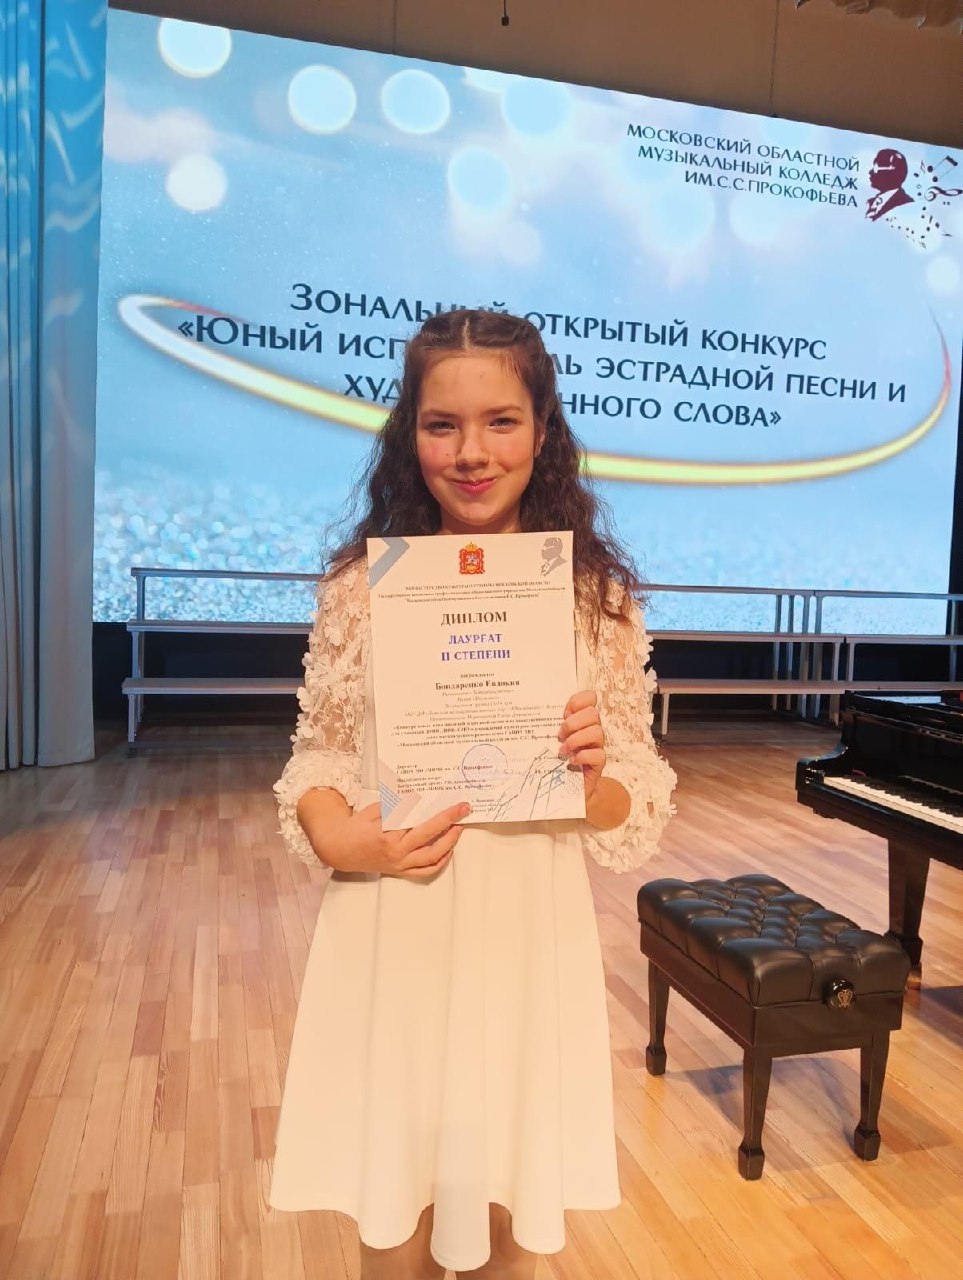 Сестры Дарья и Евдокия Бондаренко стали лауреатами Зонального конкурса